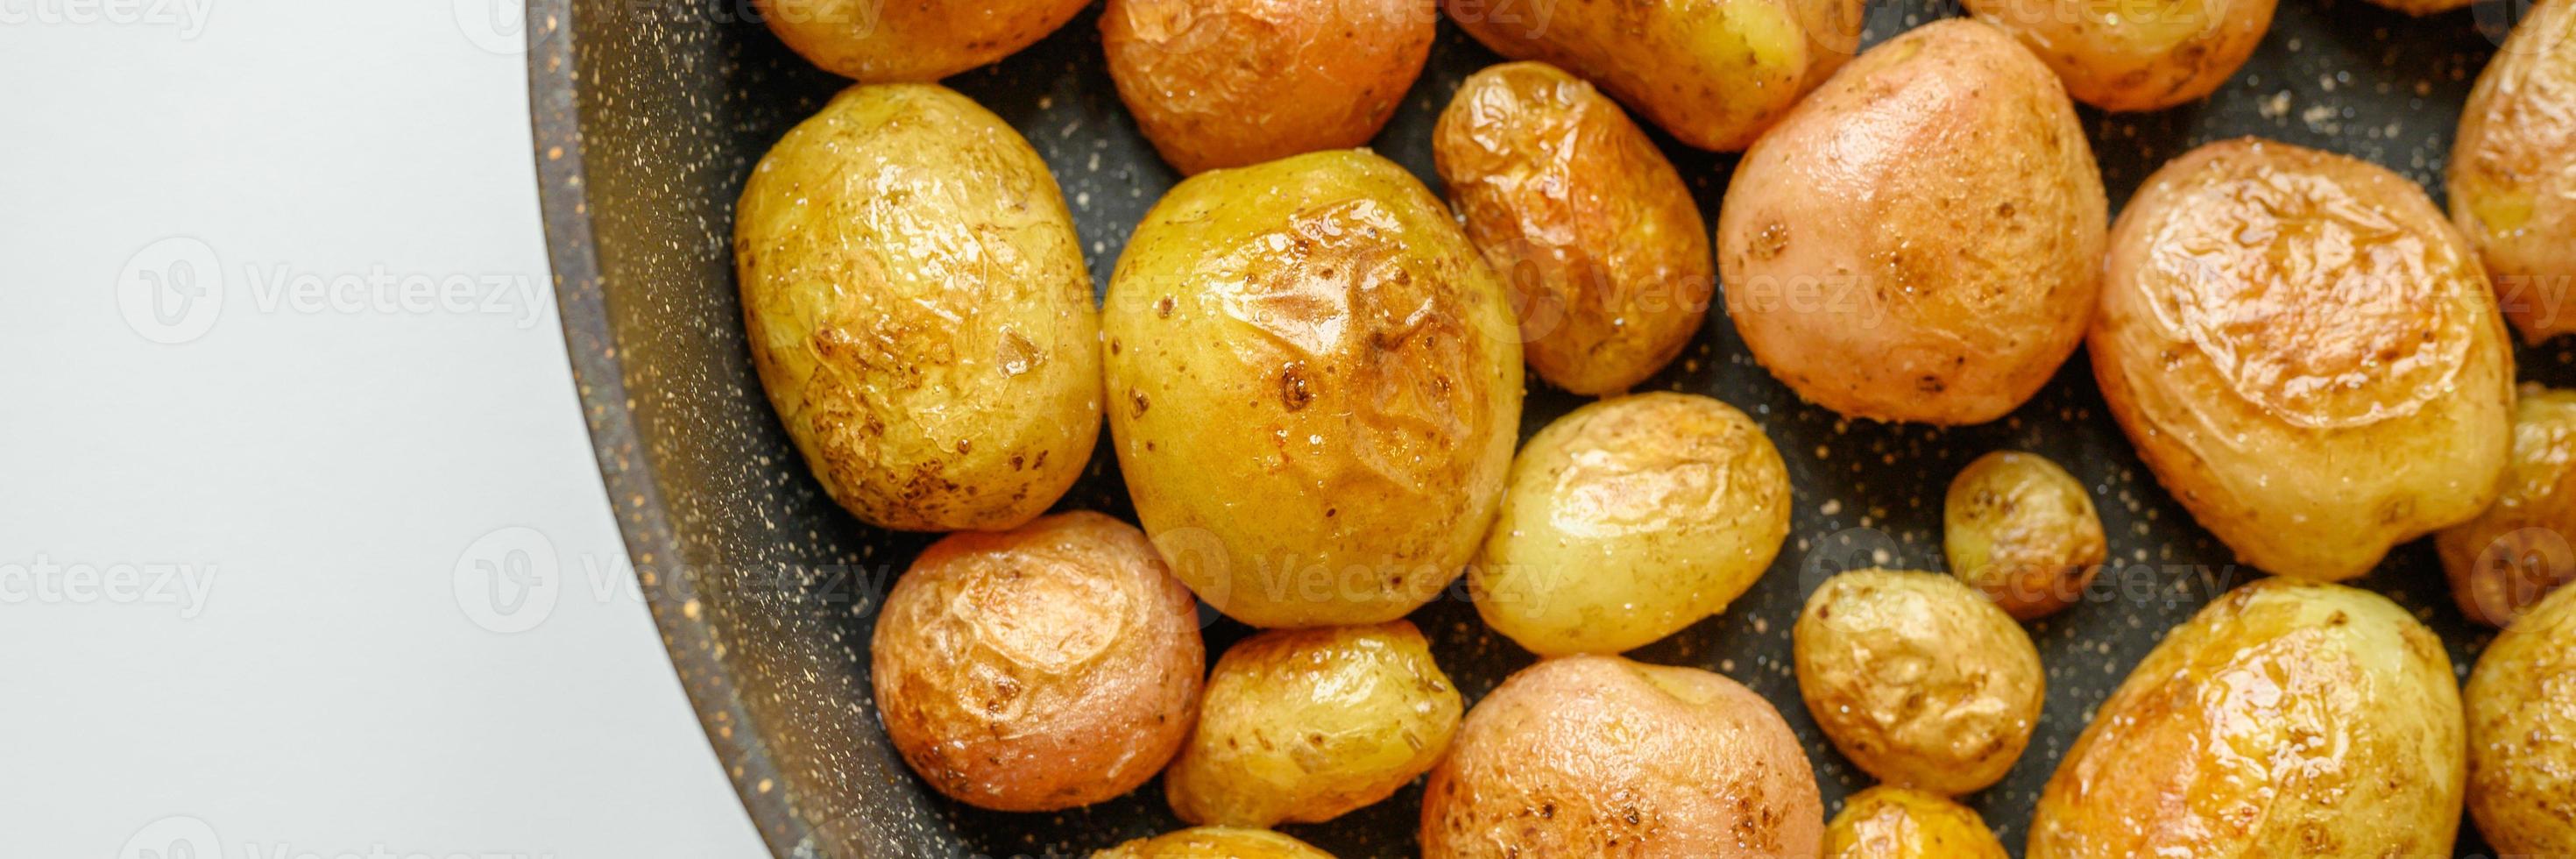 patate dorate al forno con la buccia. banner foto